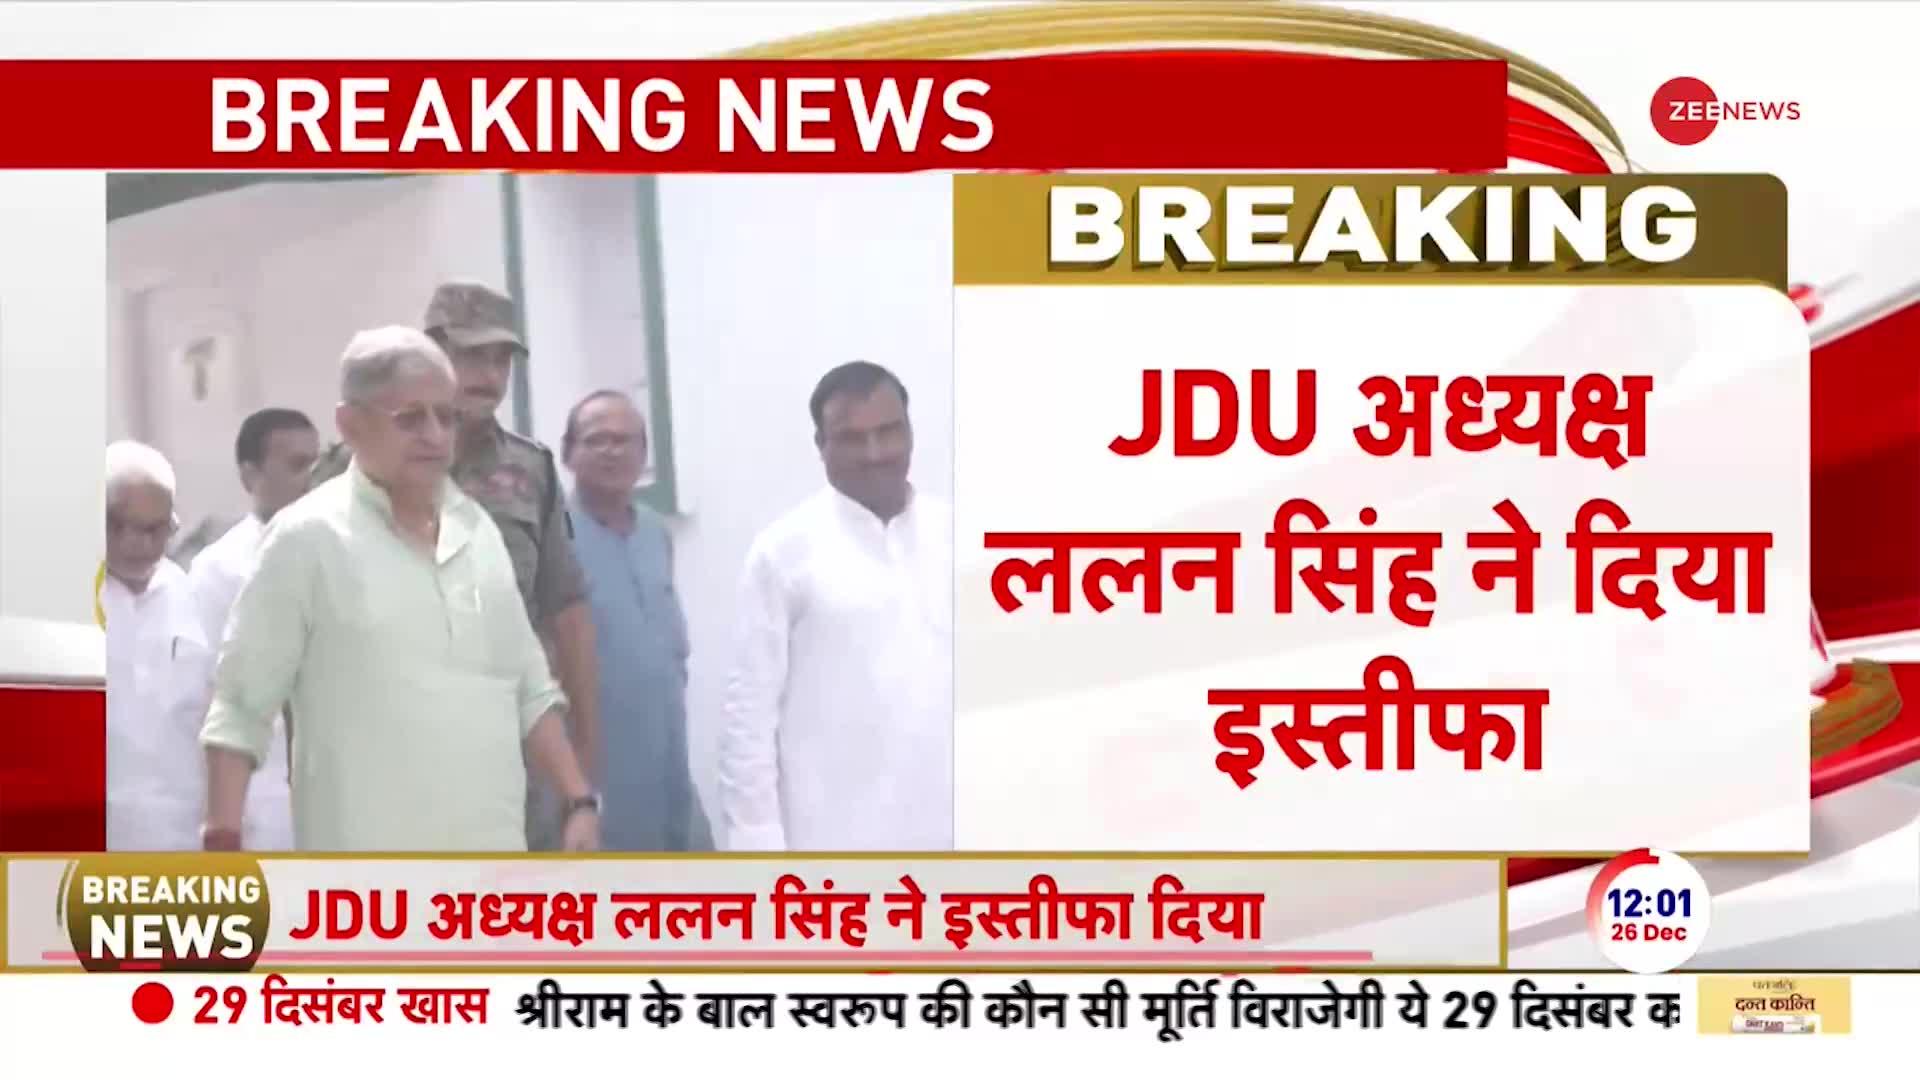 JDU अध्यक्ष ललन सिंह ने अपने पद से दिया इस्तीफा